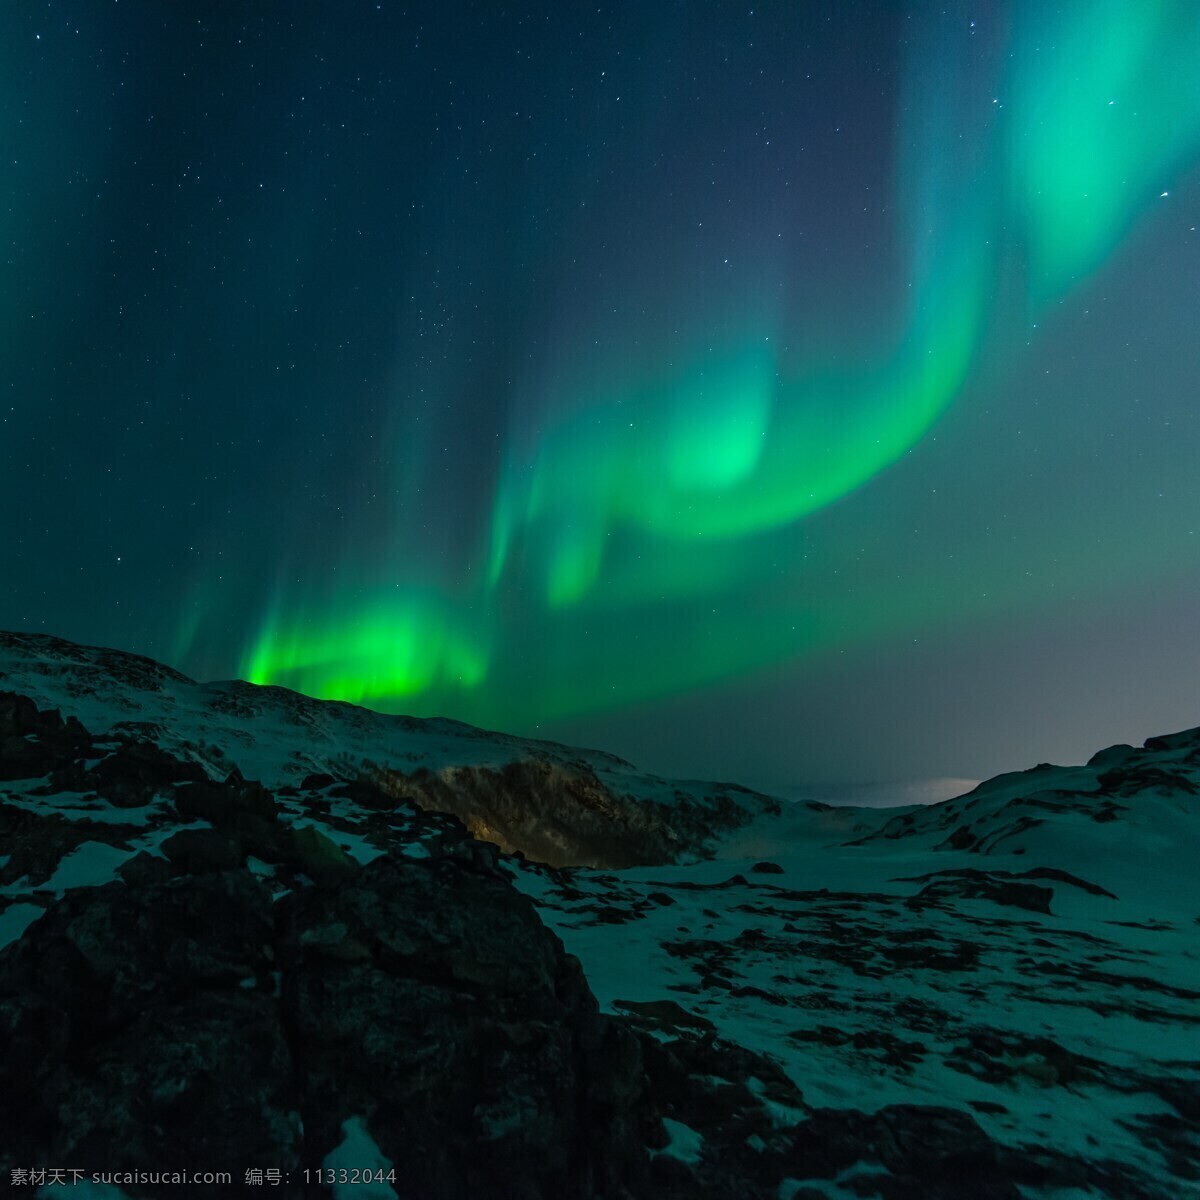 北极绿色光 北极光 极光 北部 天空 绿色 现象 天文学 磁性 黑色